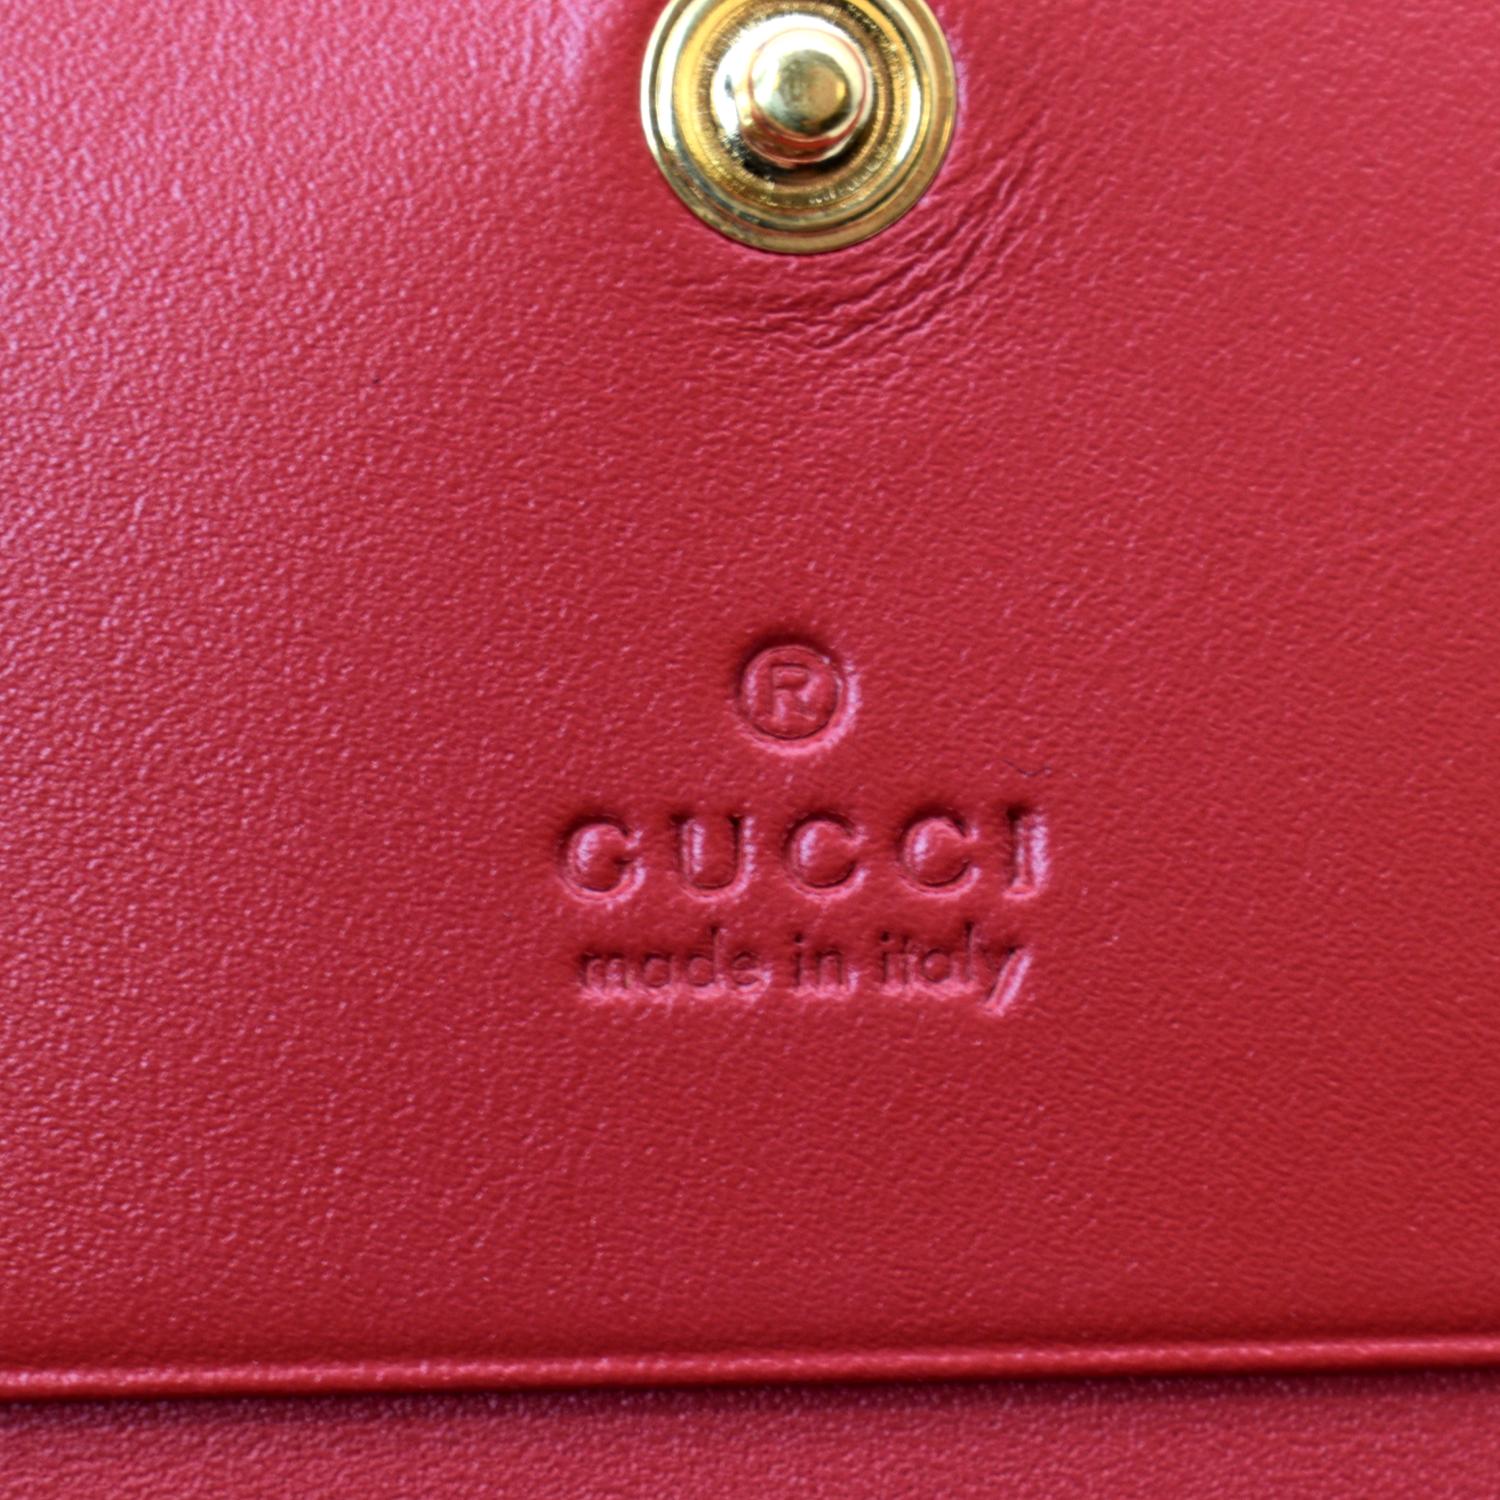 Gucci Monogram Yoga Mat  Gucci monogram, Gucci accessories, Gucci